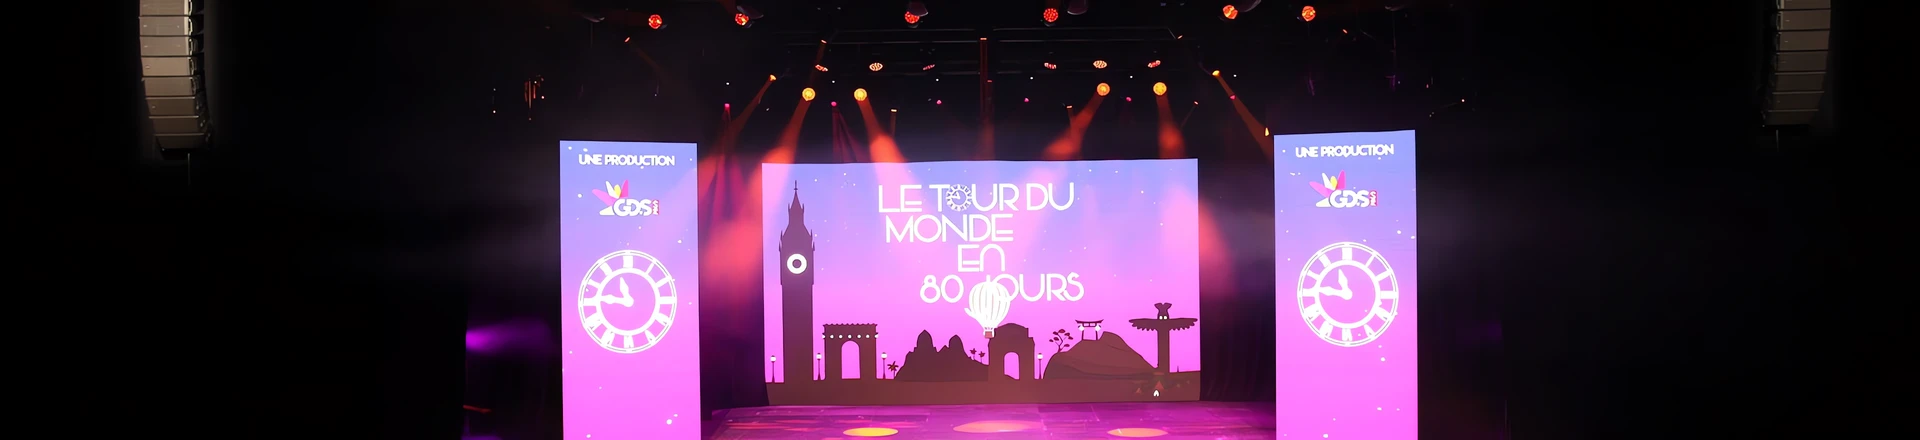 Musical Le Tour Du Monde En 80 Jours nagłośniony systemami RCF